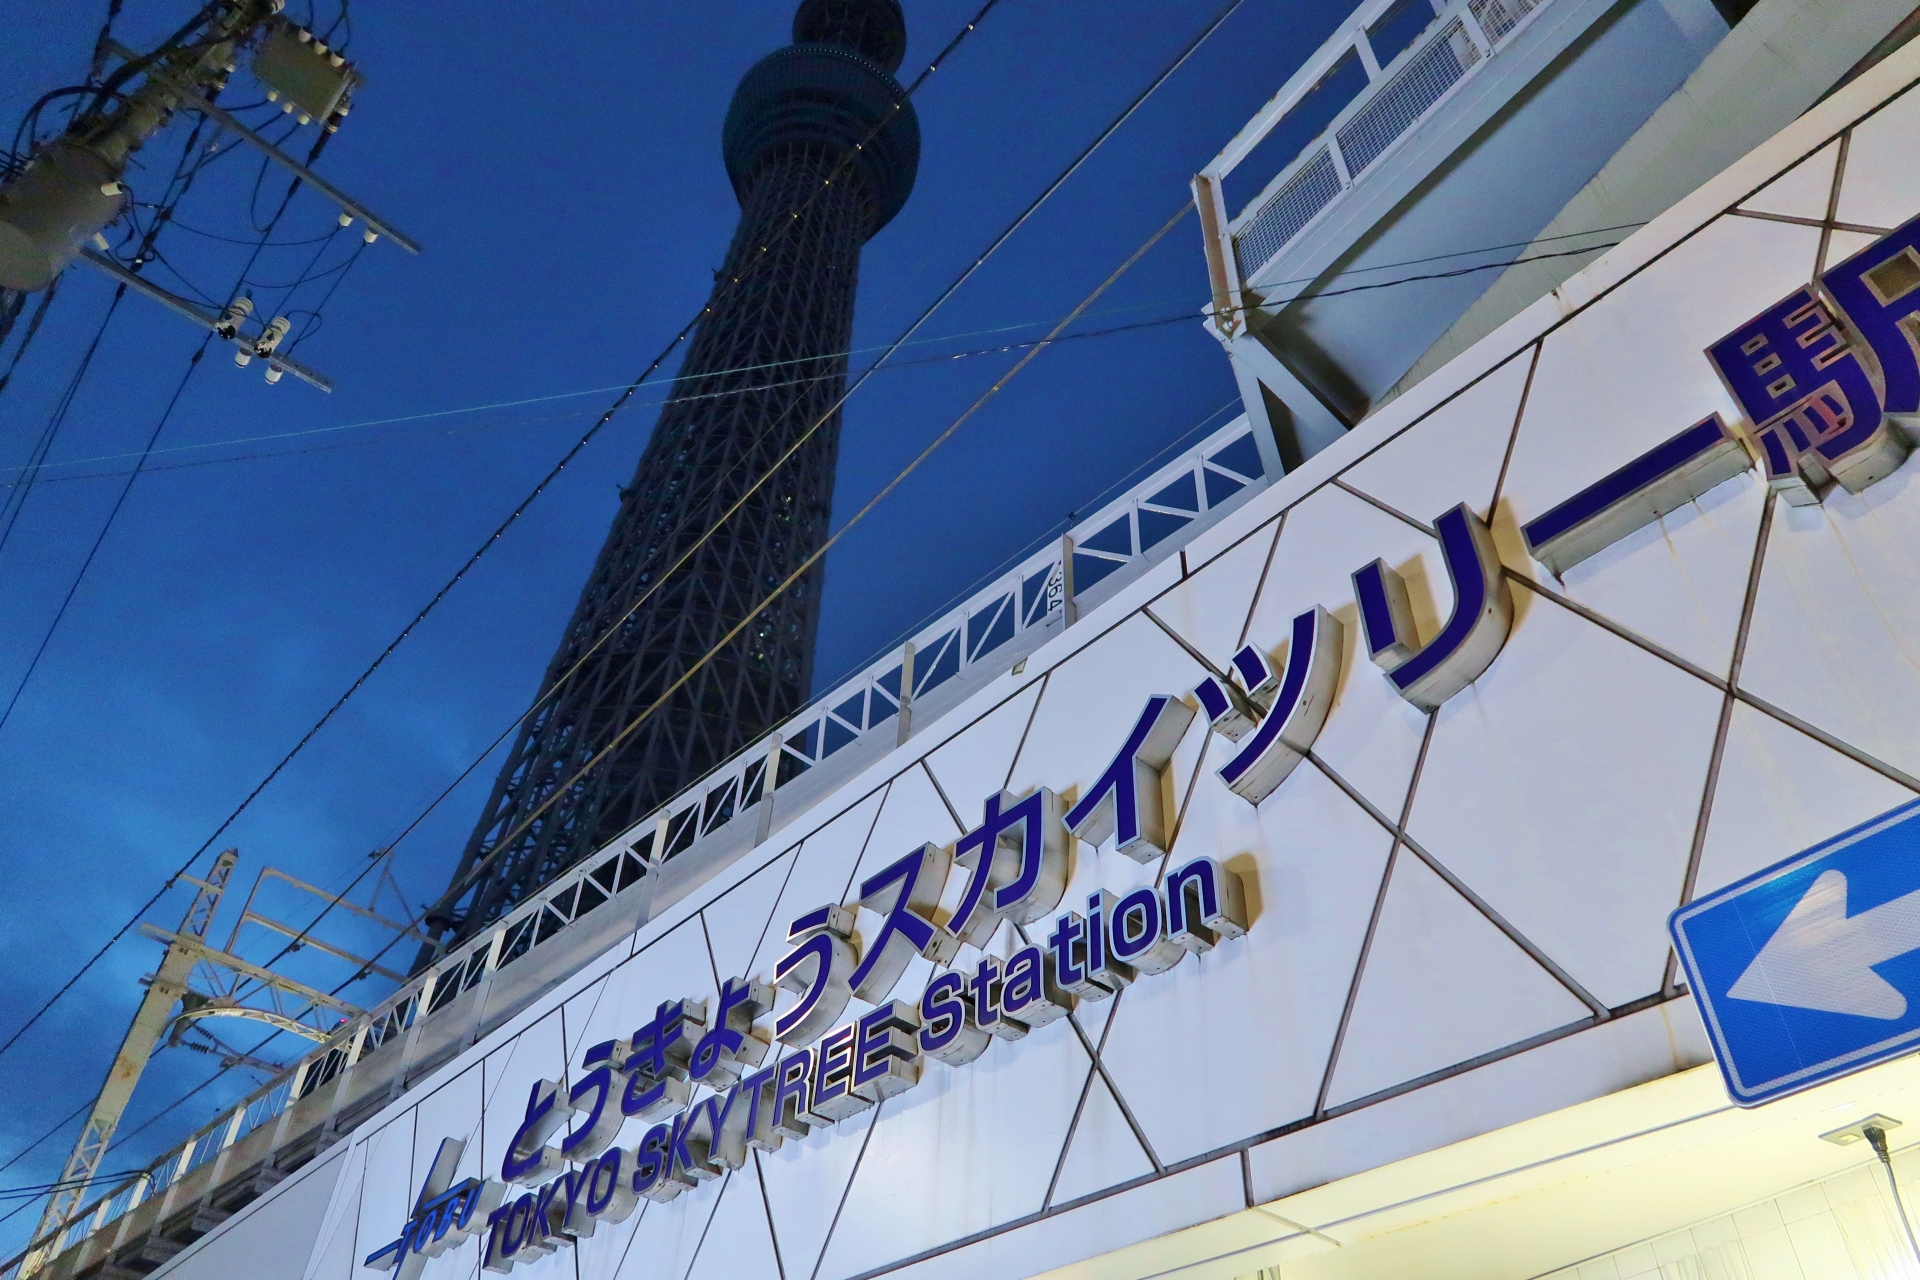 東京スカイツリー駅は吾妻橋駅として開業。その後何度かの改称を経て、2012年に現駅名になった。都営浅草線・京成押上線の押上駅と同一駅扱いになっている。